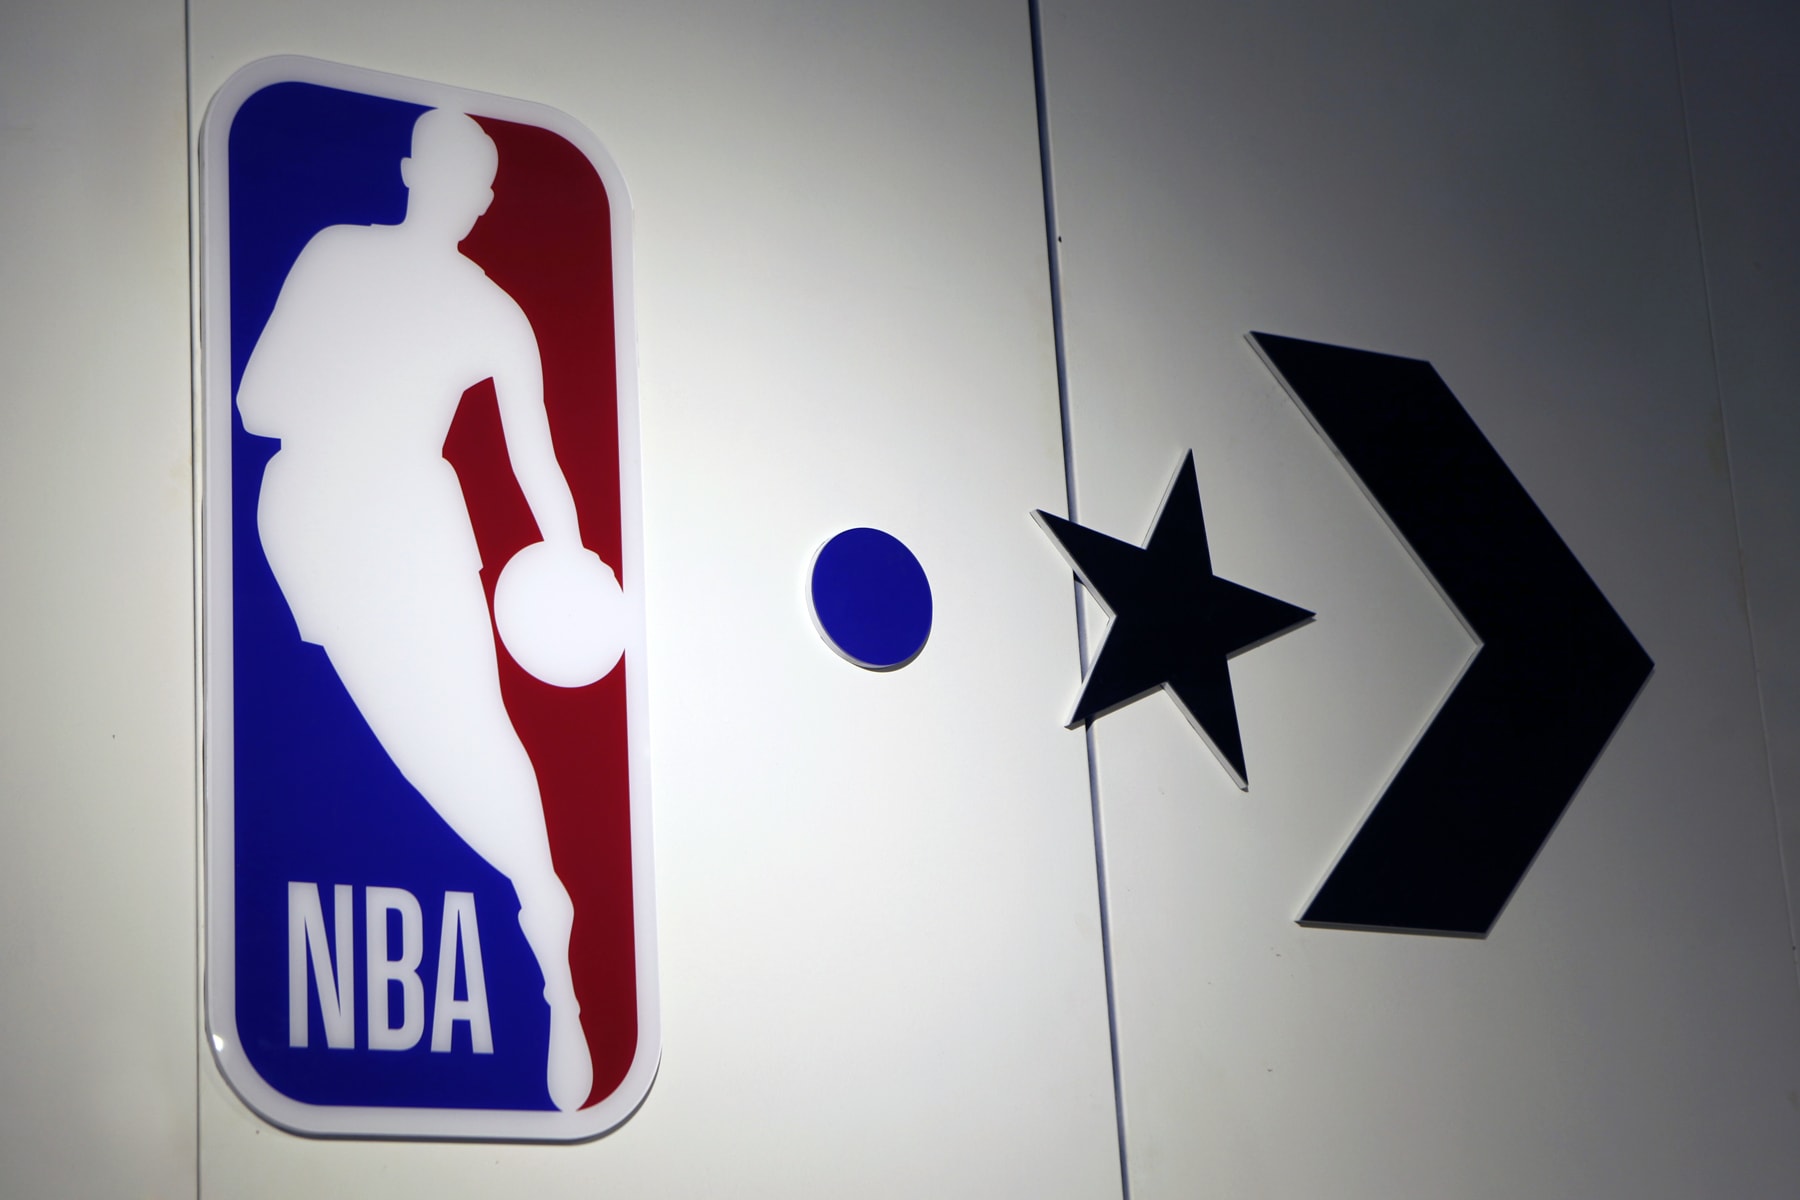 Converse x NBA 聯名系列發布會現場回顧